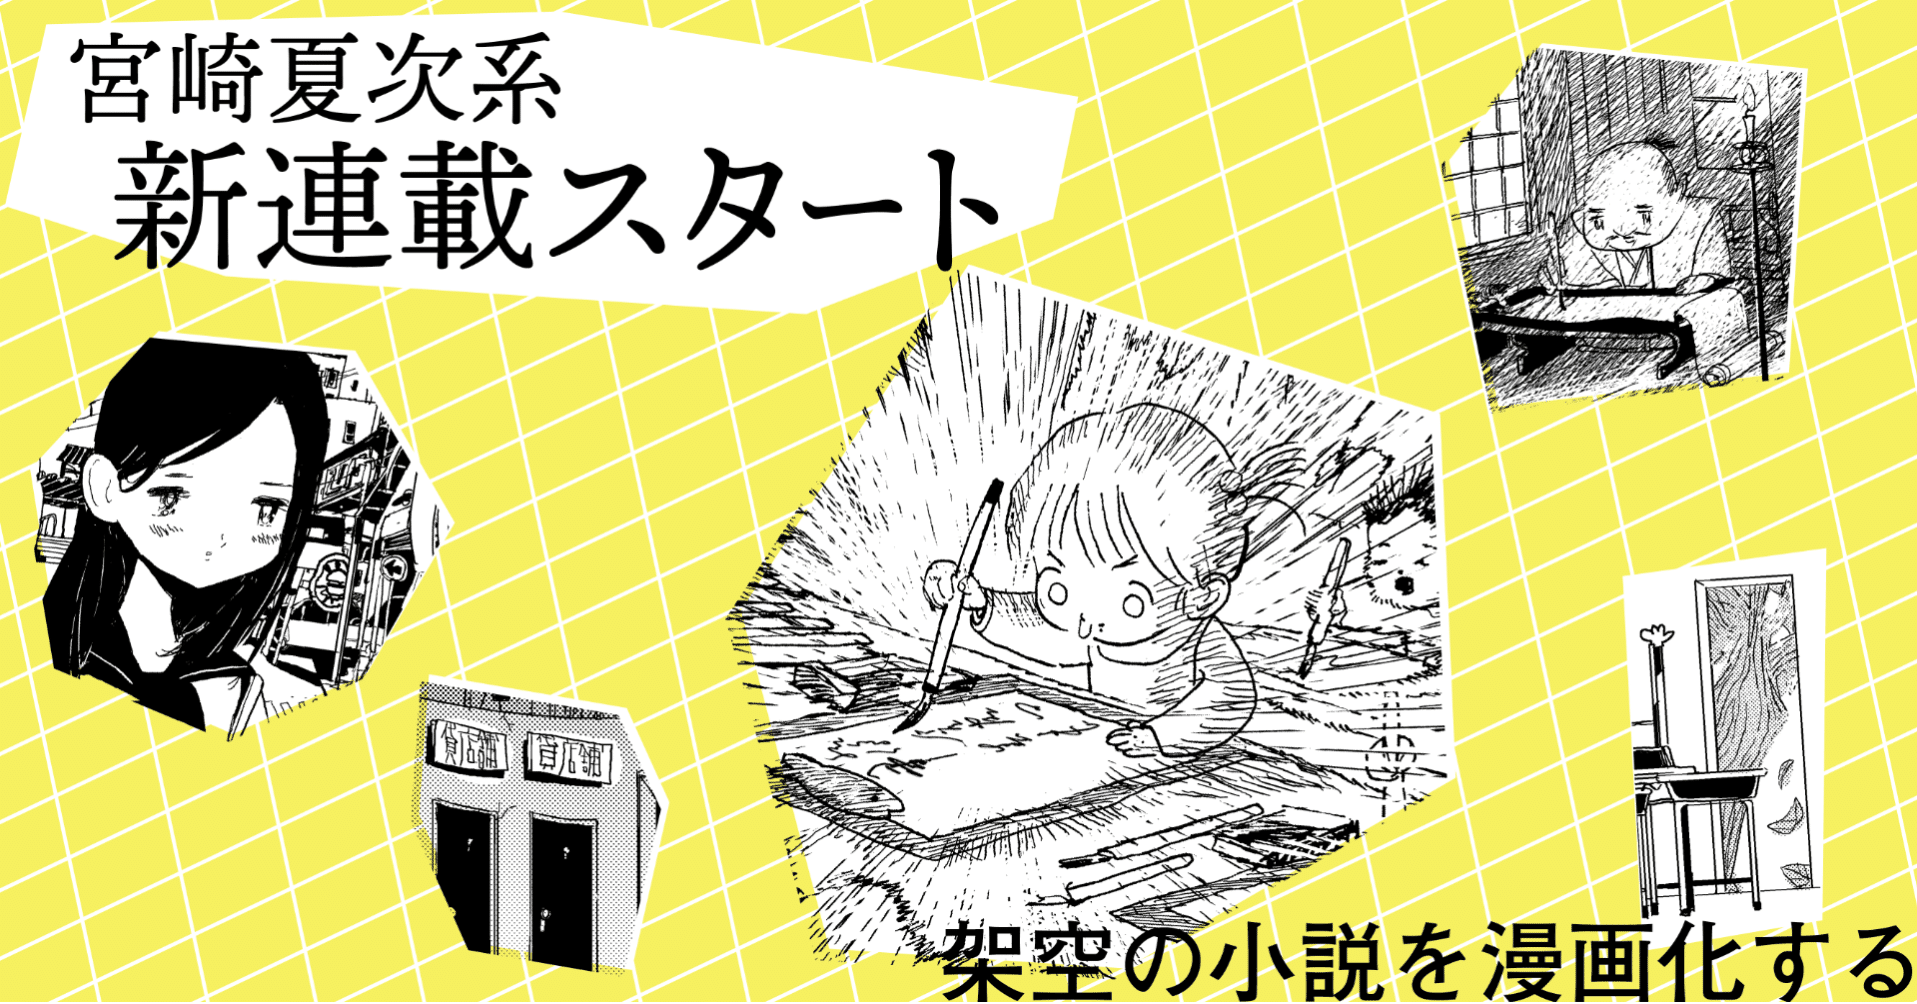 漫画家 宮崎夏次系の新連載がスタート 架空小説の漫画化 に挑む Sfマガジン 21年4月号より Hayakawa Books Magazines B